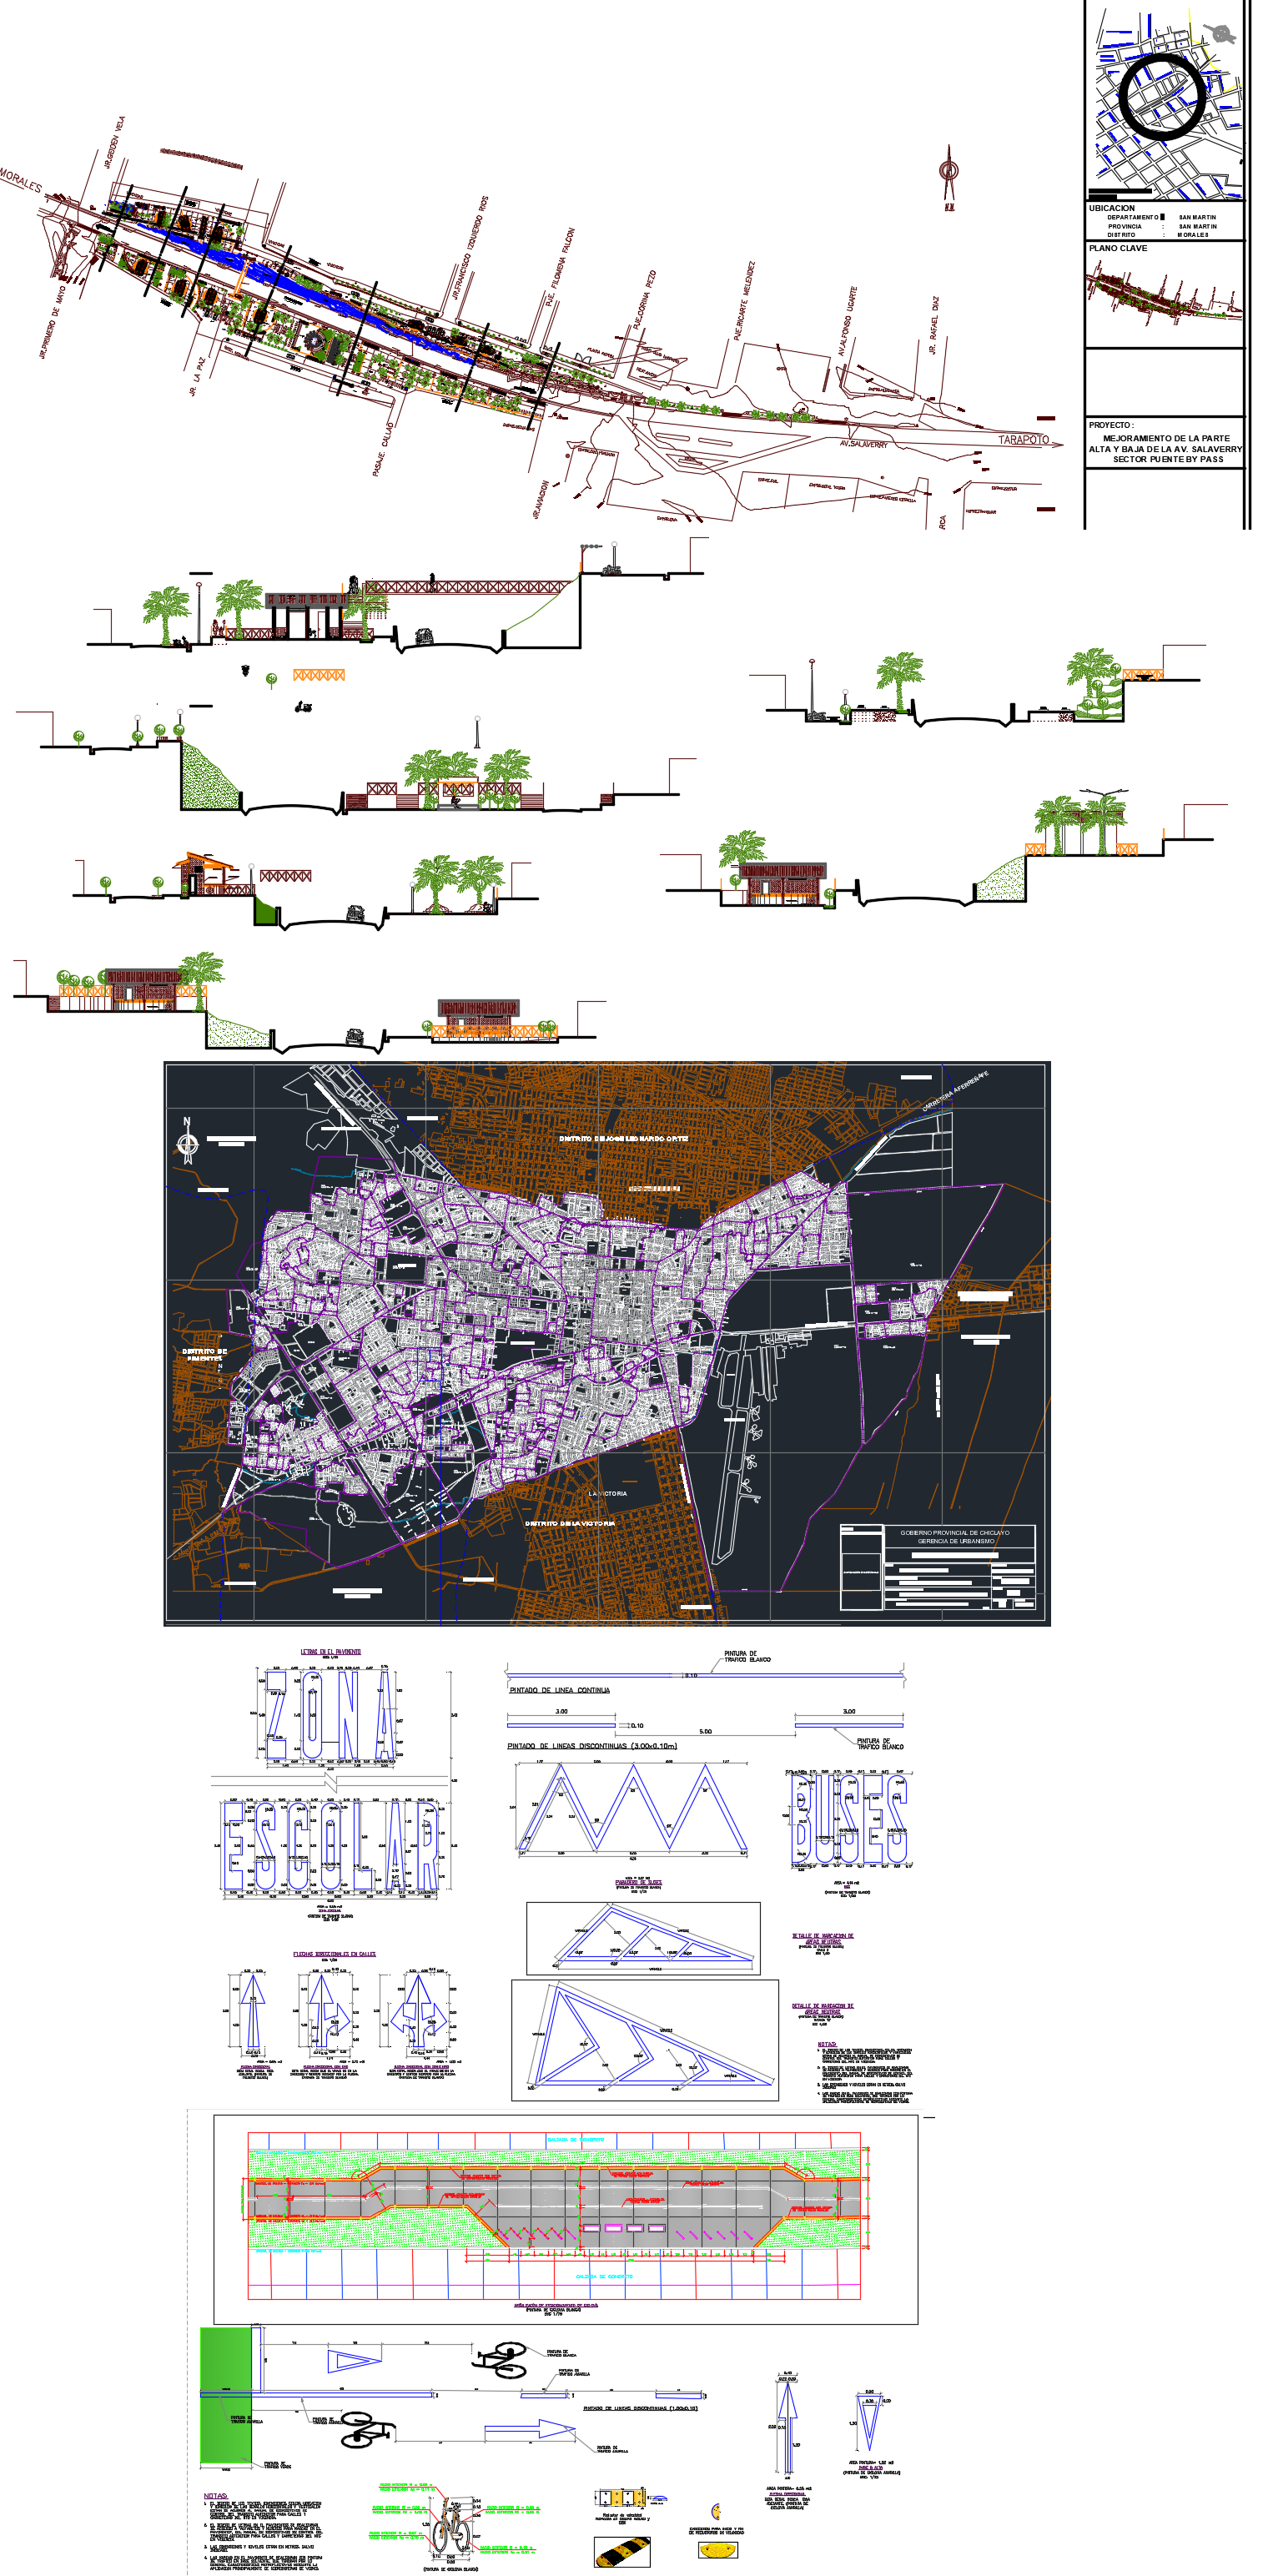 Plans of Ciclovia, Urban Cadastre and Boulevard